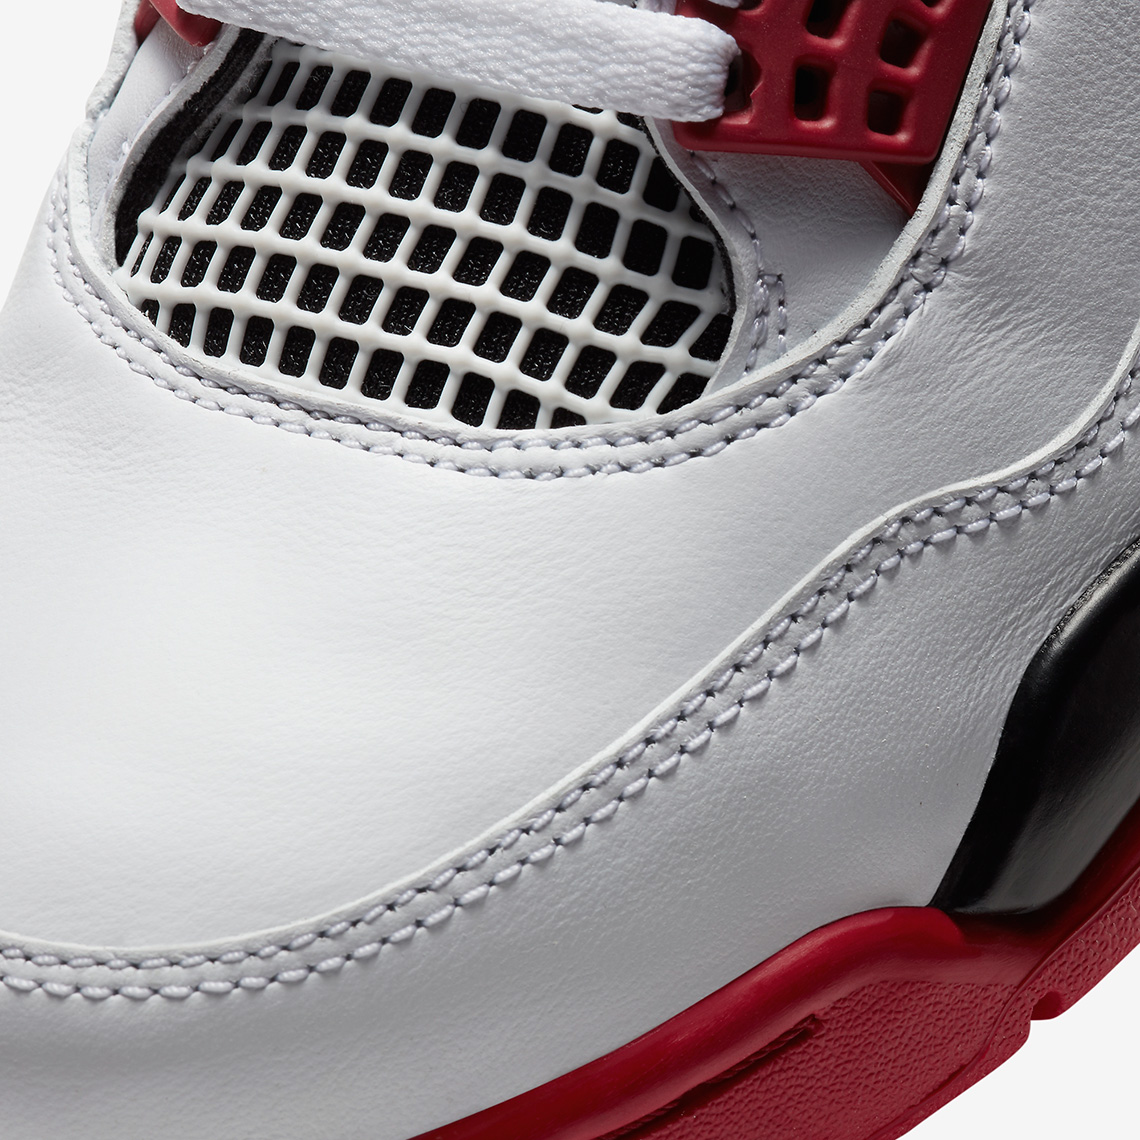 Air Jordan 4 'Red Metallic' Release Date. Nike SNKRS GB